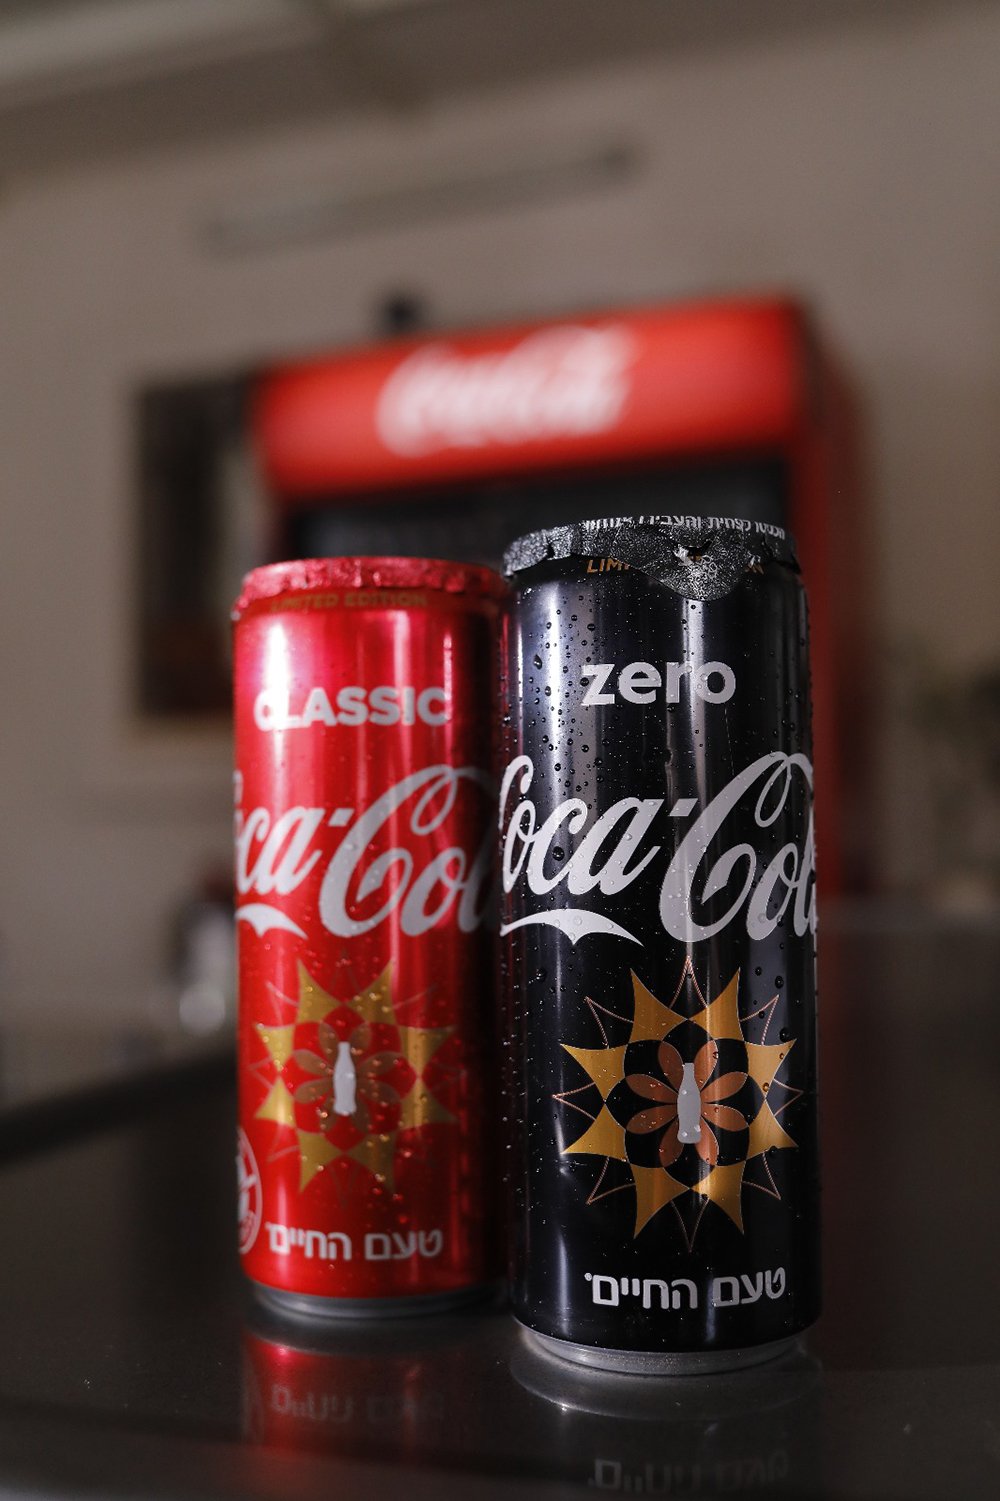 اشتقنالكم ومنستناكم" شعار حملة كوكا-كولا لدعم محلات الأكل السريع والمطاعم-4